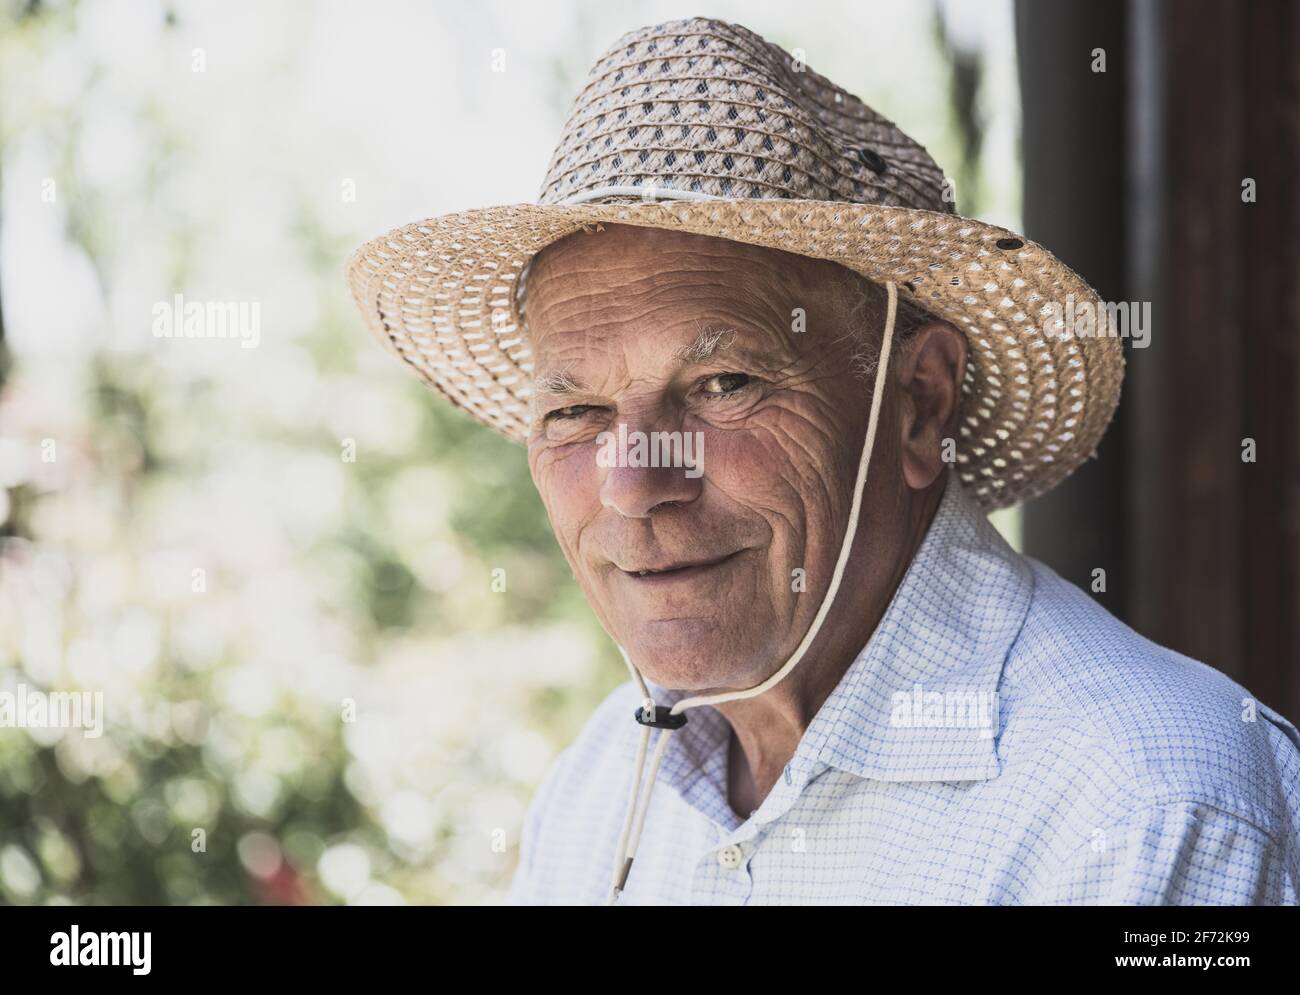 Porträt eines älteren lächelnden Mannes mit Strohhut, der auf die Kamera schaute. Ältere Menschen Lebensstil, Abend Glühfilter. Stockfoto